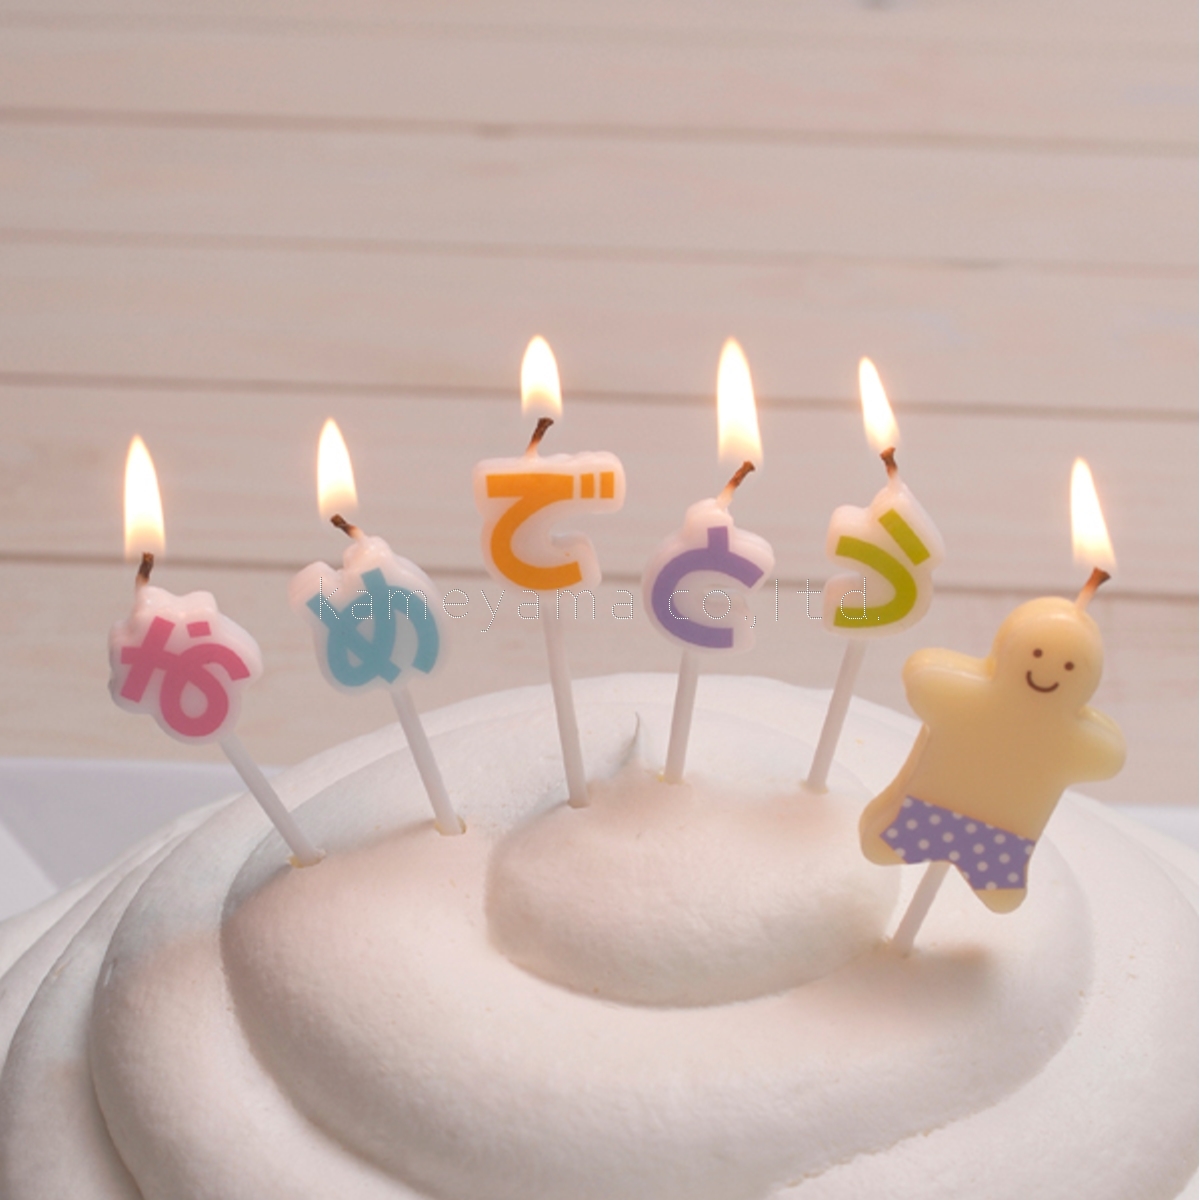 楽天市場 誕生日 バースデーケーキ カメヤマキャンドル おめでとうキャンドル ギフトミニ かわいいキャンドル 誕生日ケーキのお店ケベック